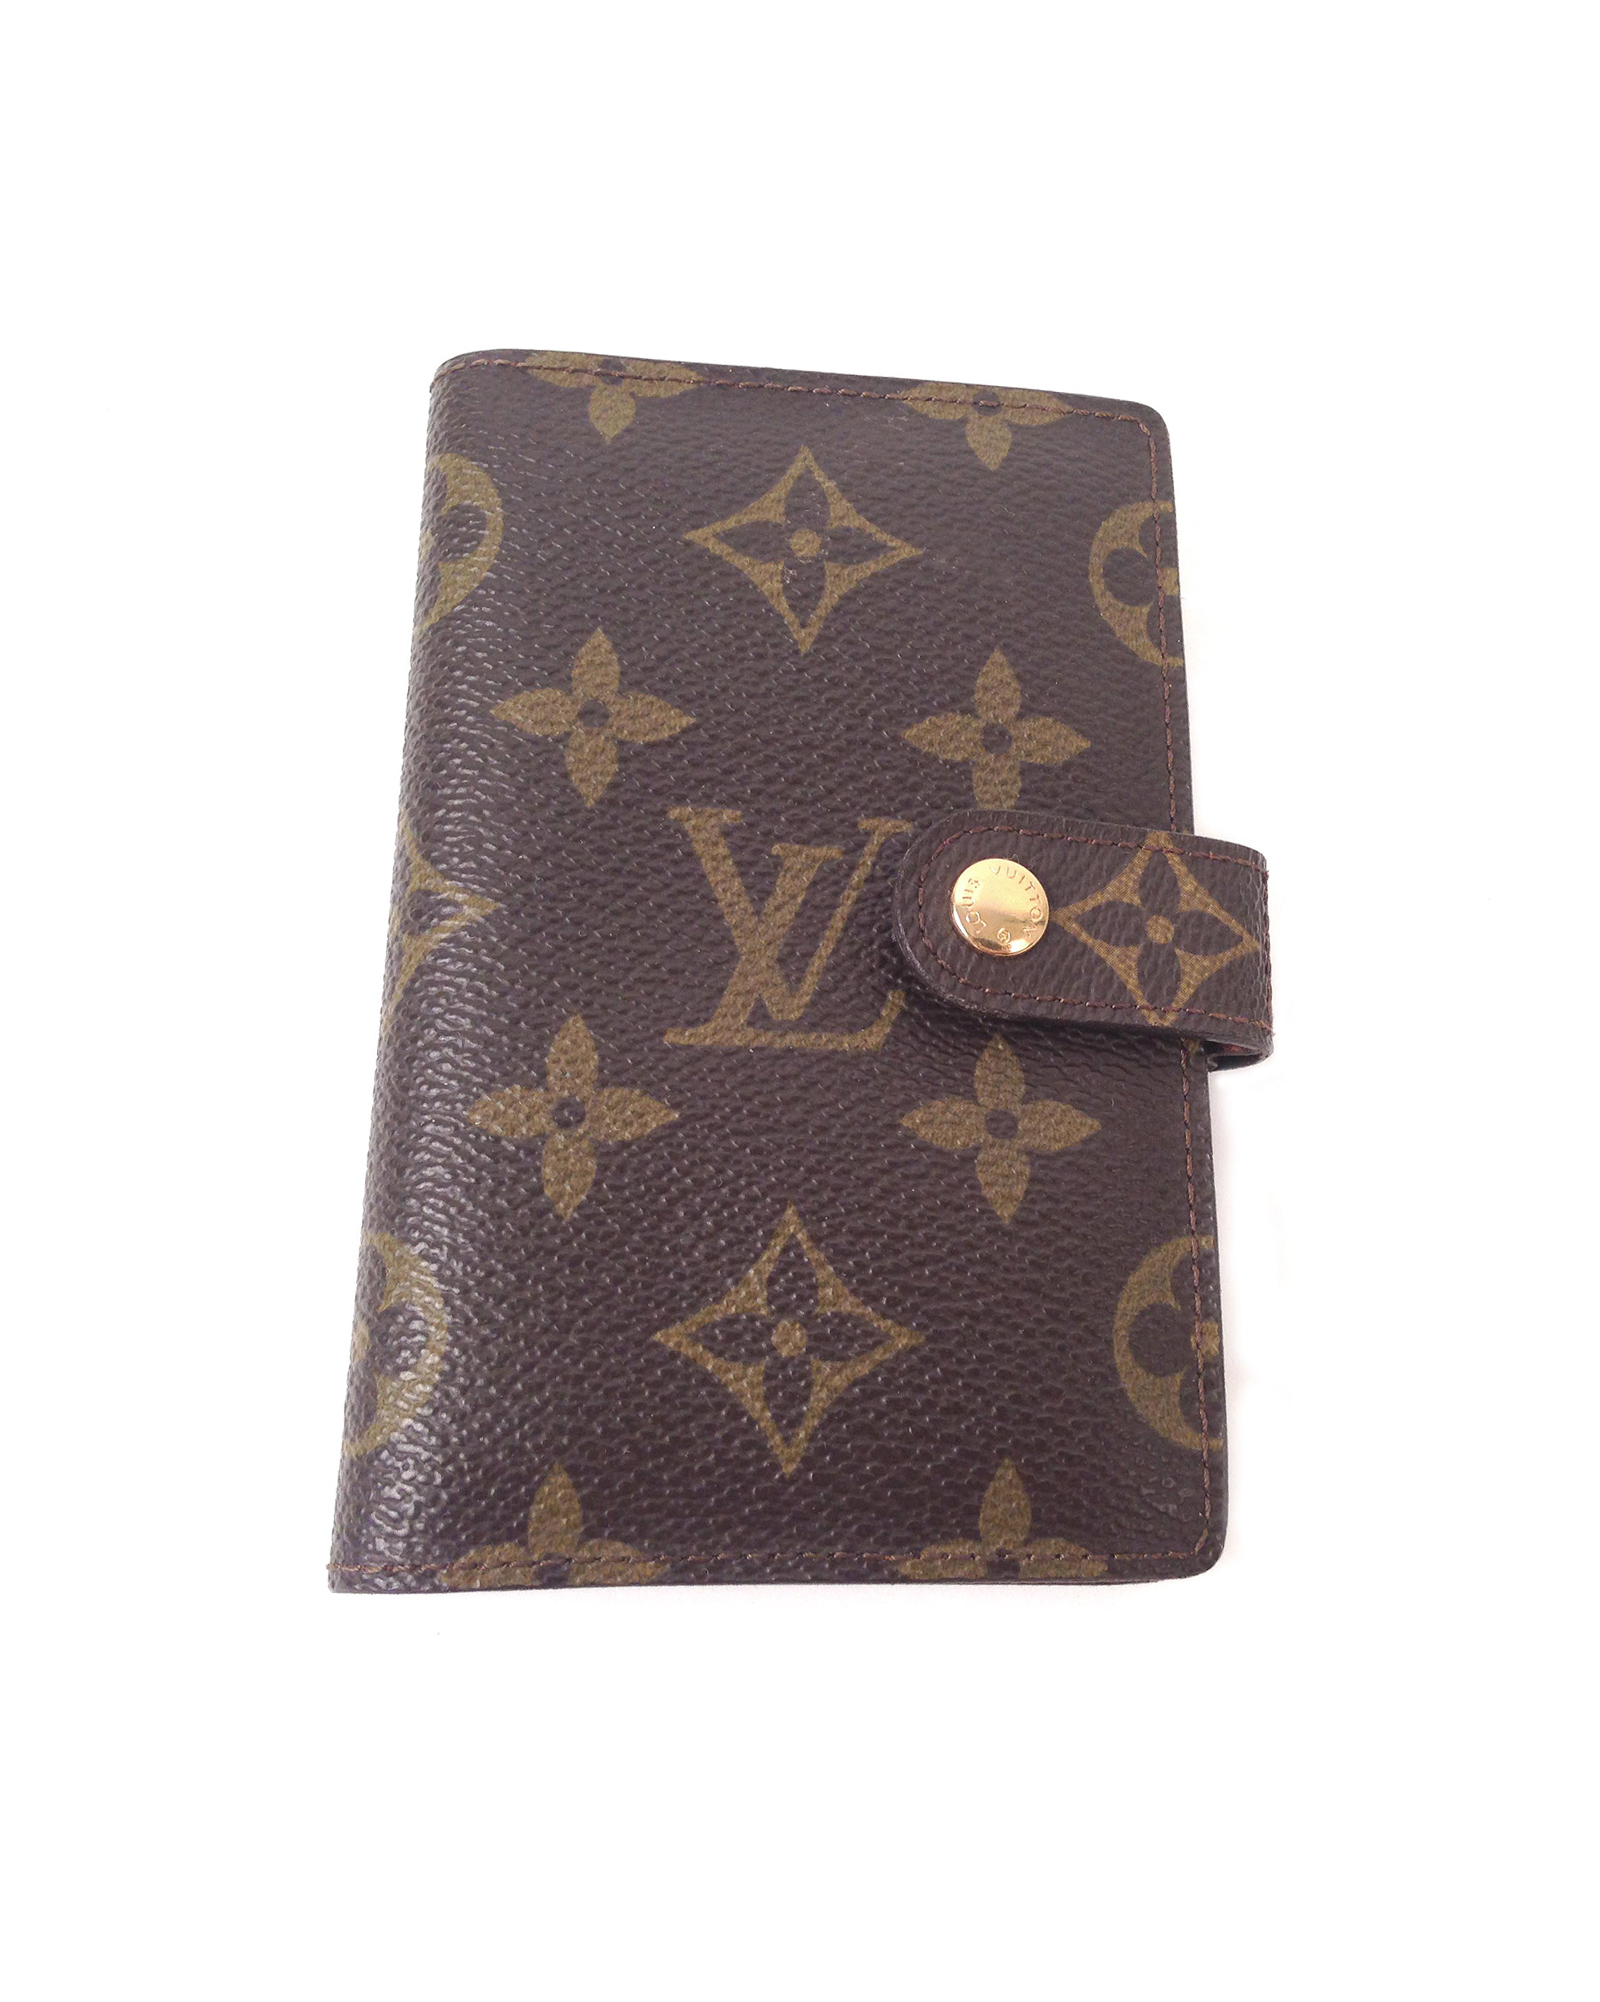 Louis Vuitton Address Phone & Calendar Vintage Wallet - Einna Sirrod